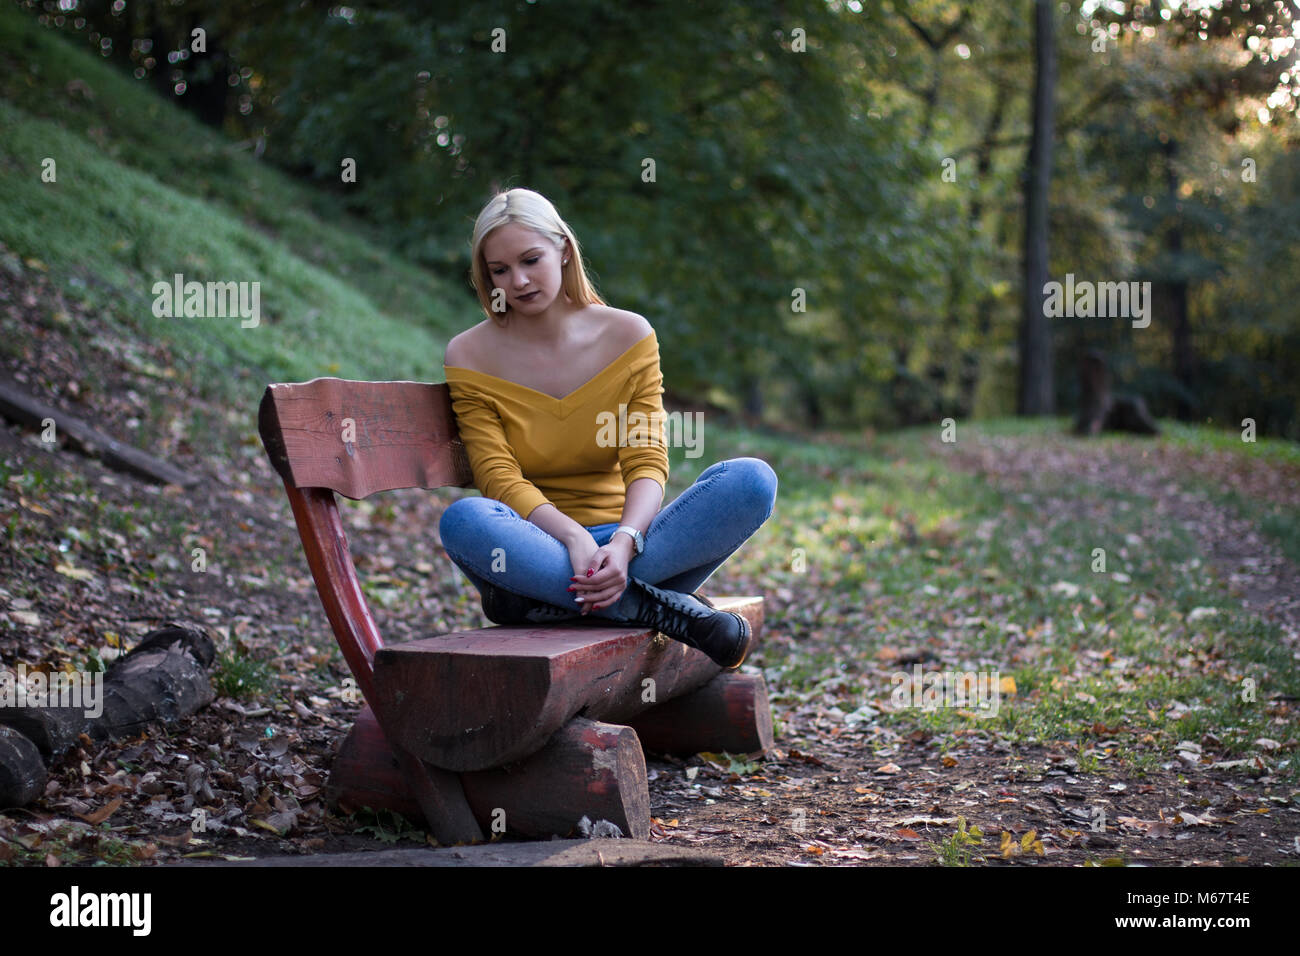 Jeune Femme Blonde Assise Seule Sur Un Banc En Bois Le Sentiment De Solitude Et Triste Photo Stock Alamy